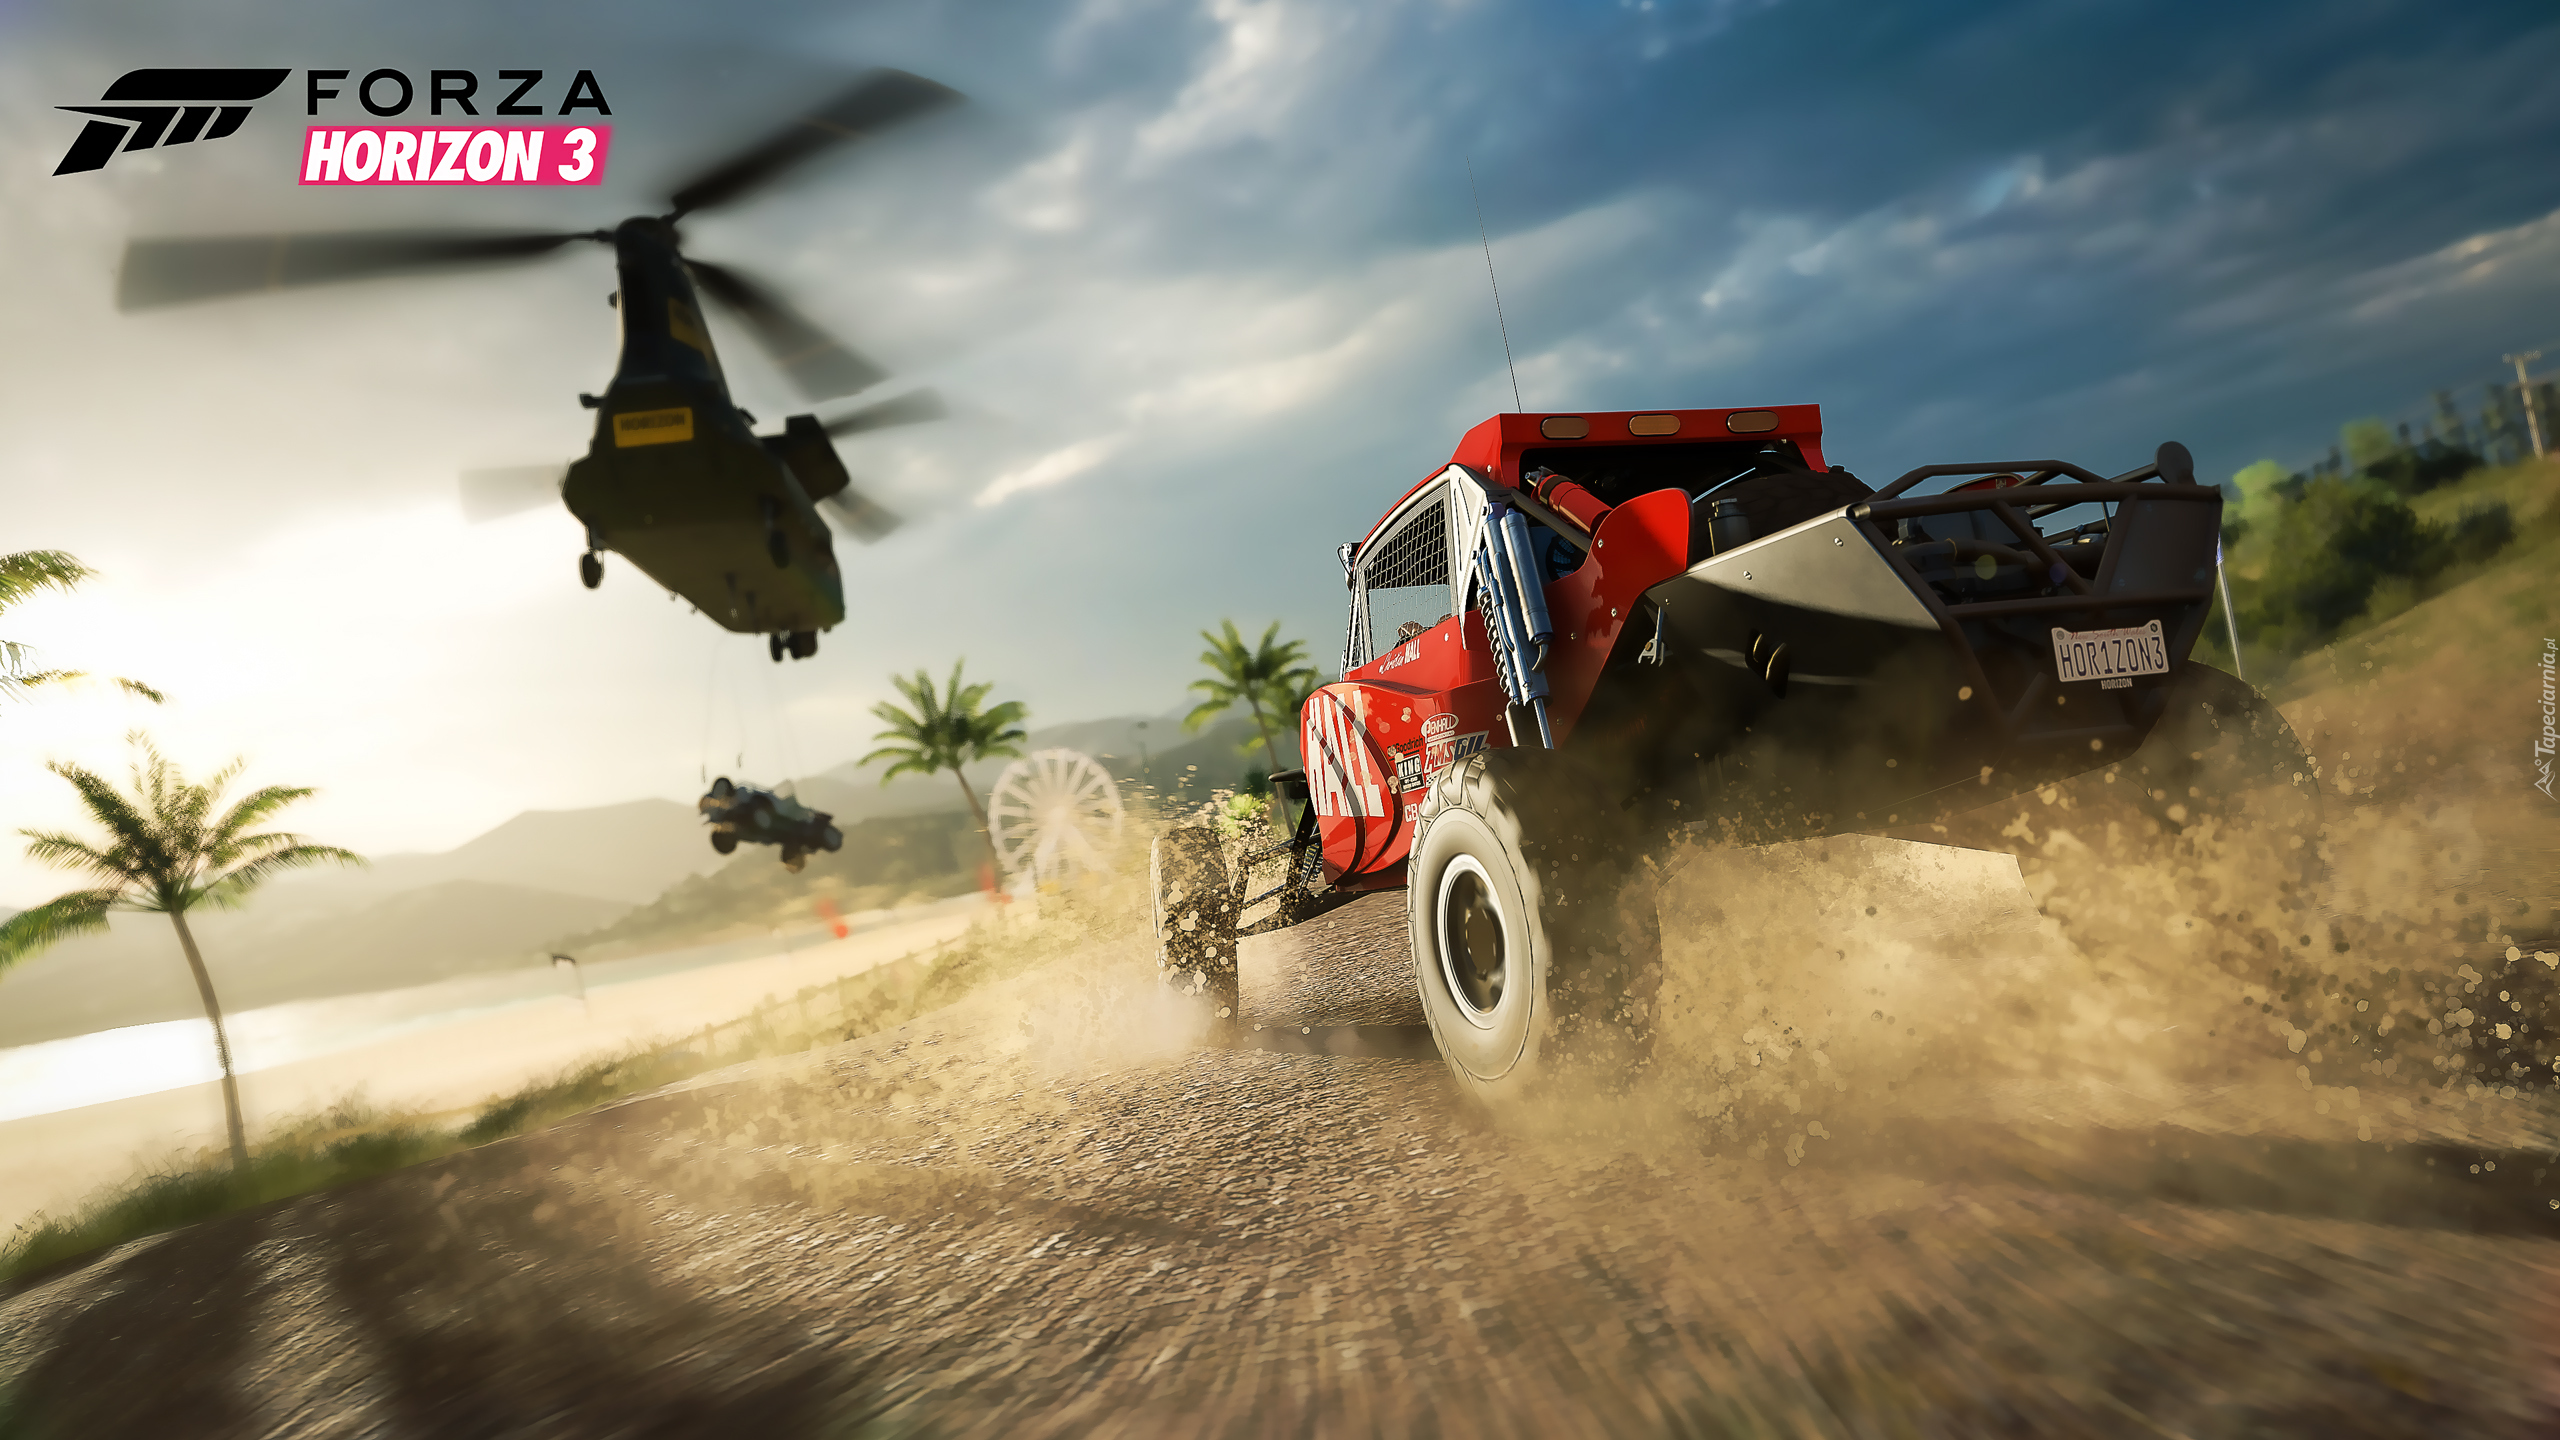 Forza Horizon 3, Samochód, Terenowy, Helikopter